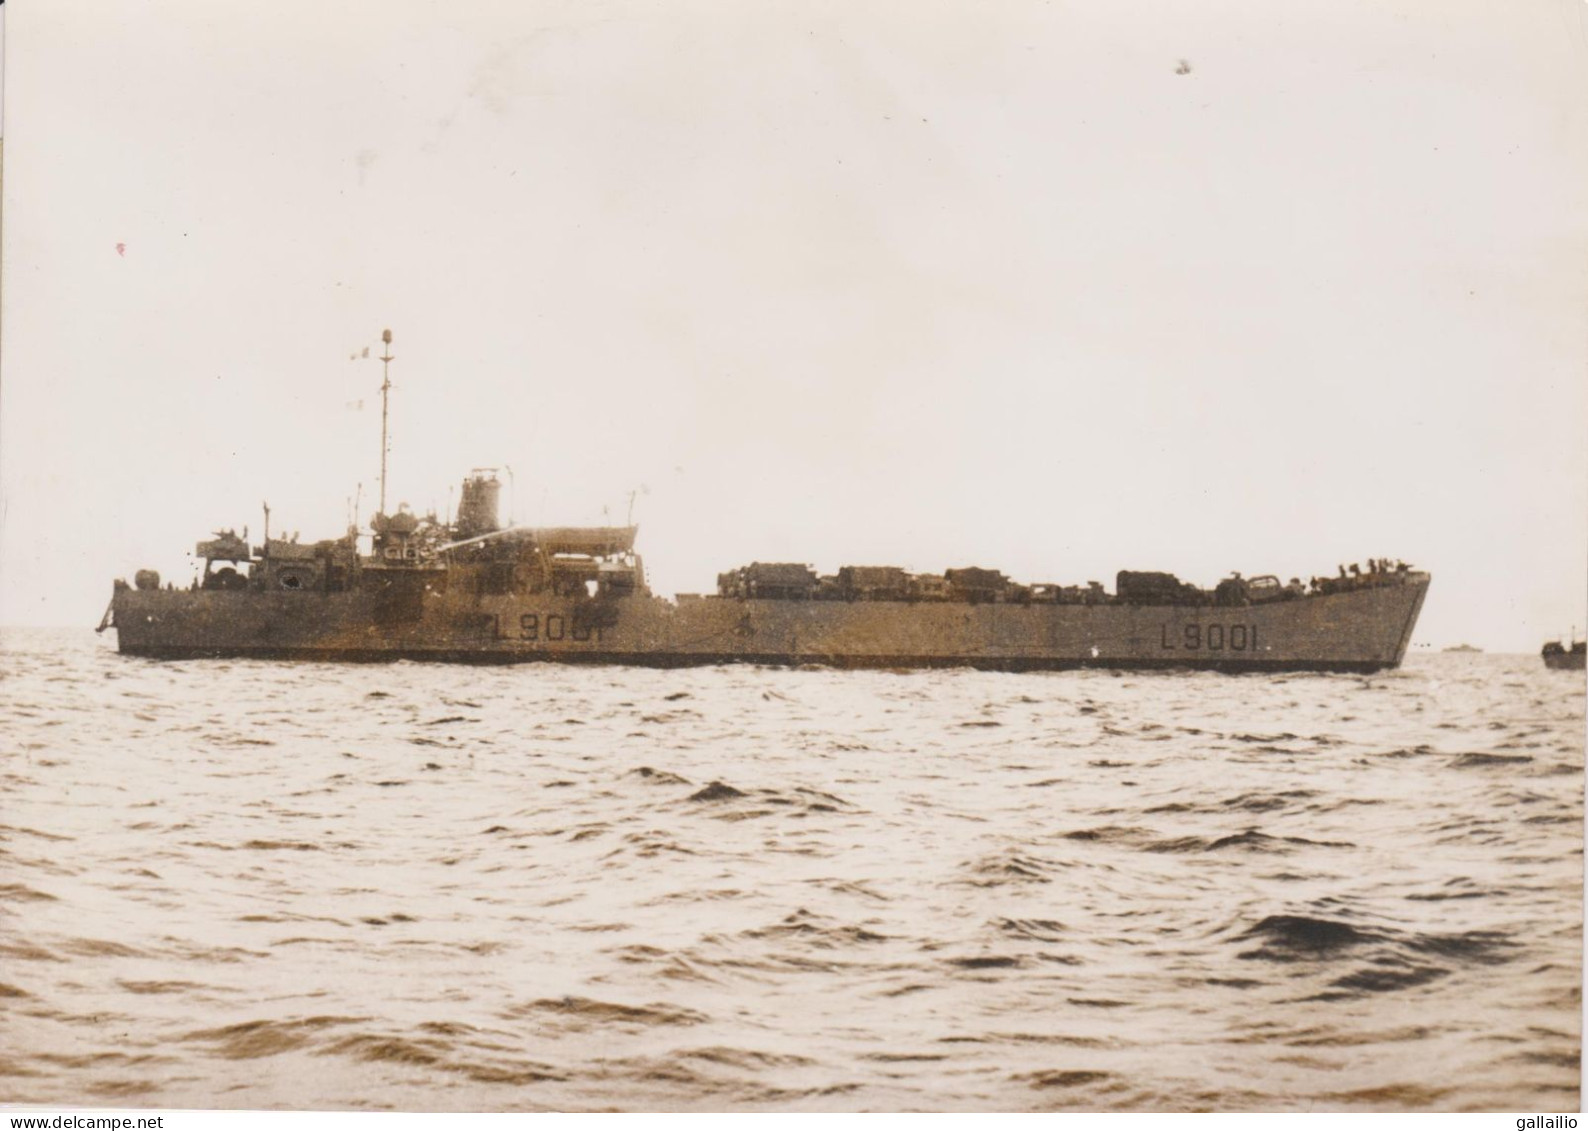 PHOTO PRESSE UNE MINE EXPLOSE EN RADE D'ALGER SUR LE L S T LEITA DECEMBRE 1961  FORMAT 13 X 18 CMS - Schiffe